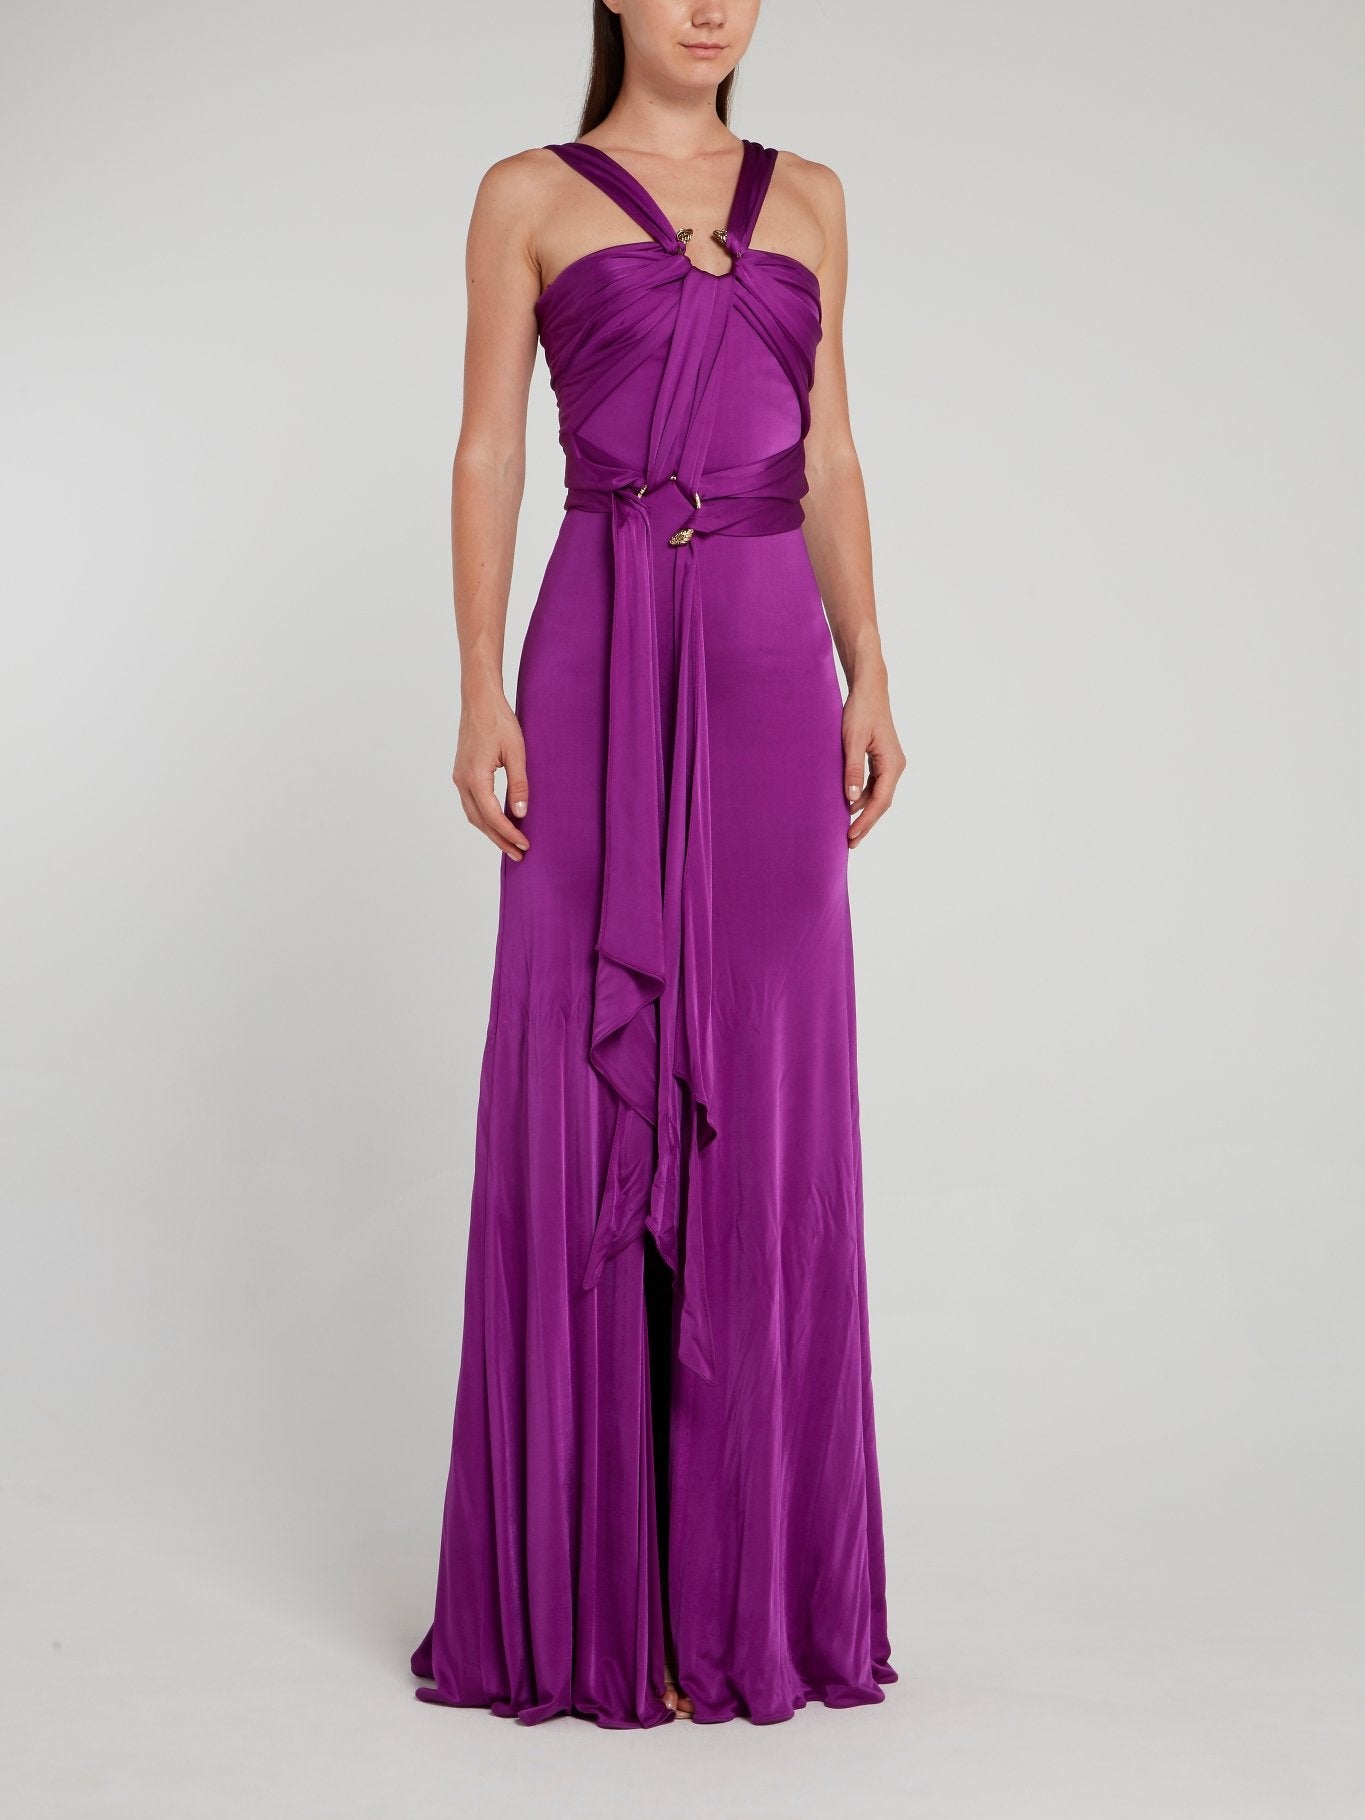 Snake Embellished Purple Slit Dress